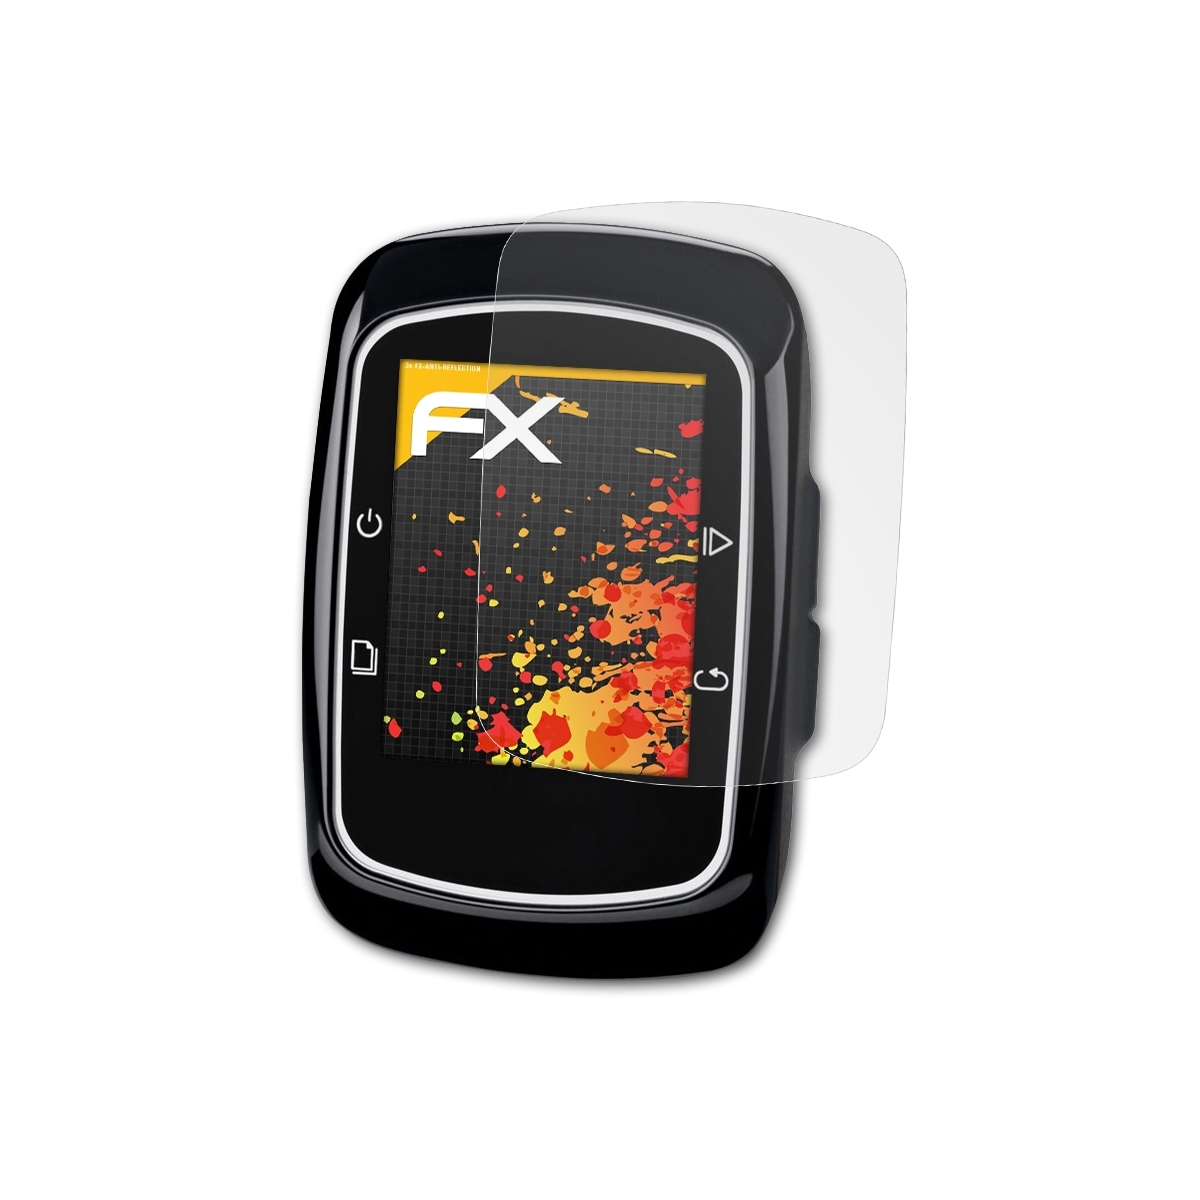 ATFOLIX 3x FX-Antireflex Displayschutz(für Garmin 200) Edge